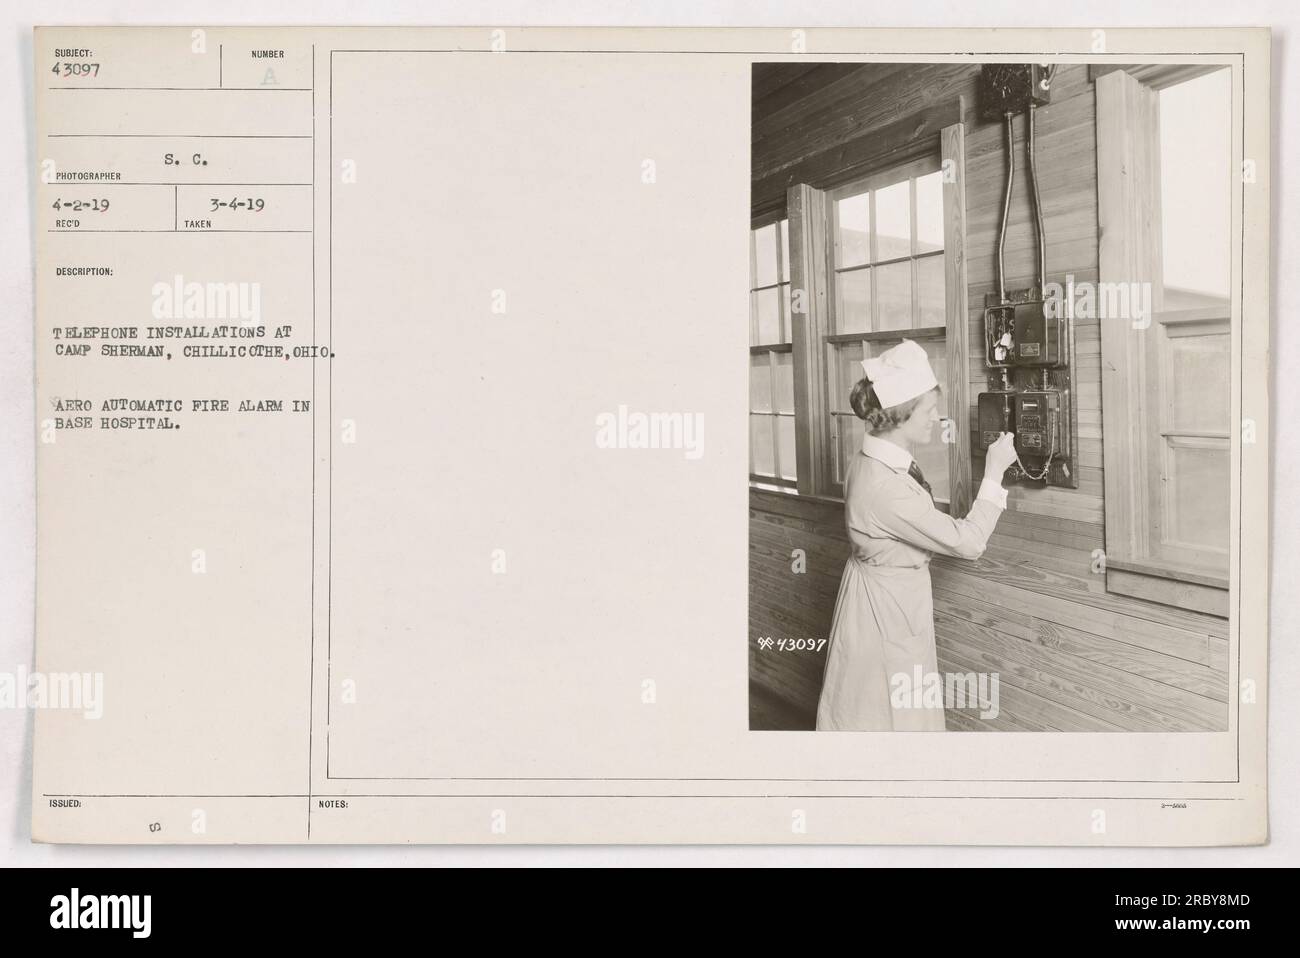 La photographie montre une alarme incendie automatique Arro installée dans l'hôpital de base du Camp Sherman à Chillicothe, Ohio pendant la première Guerre mondiale Banque D'Images